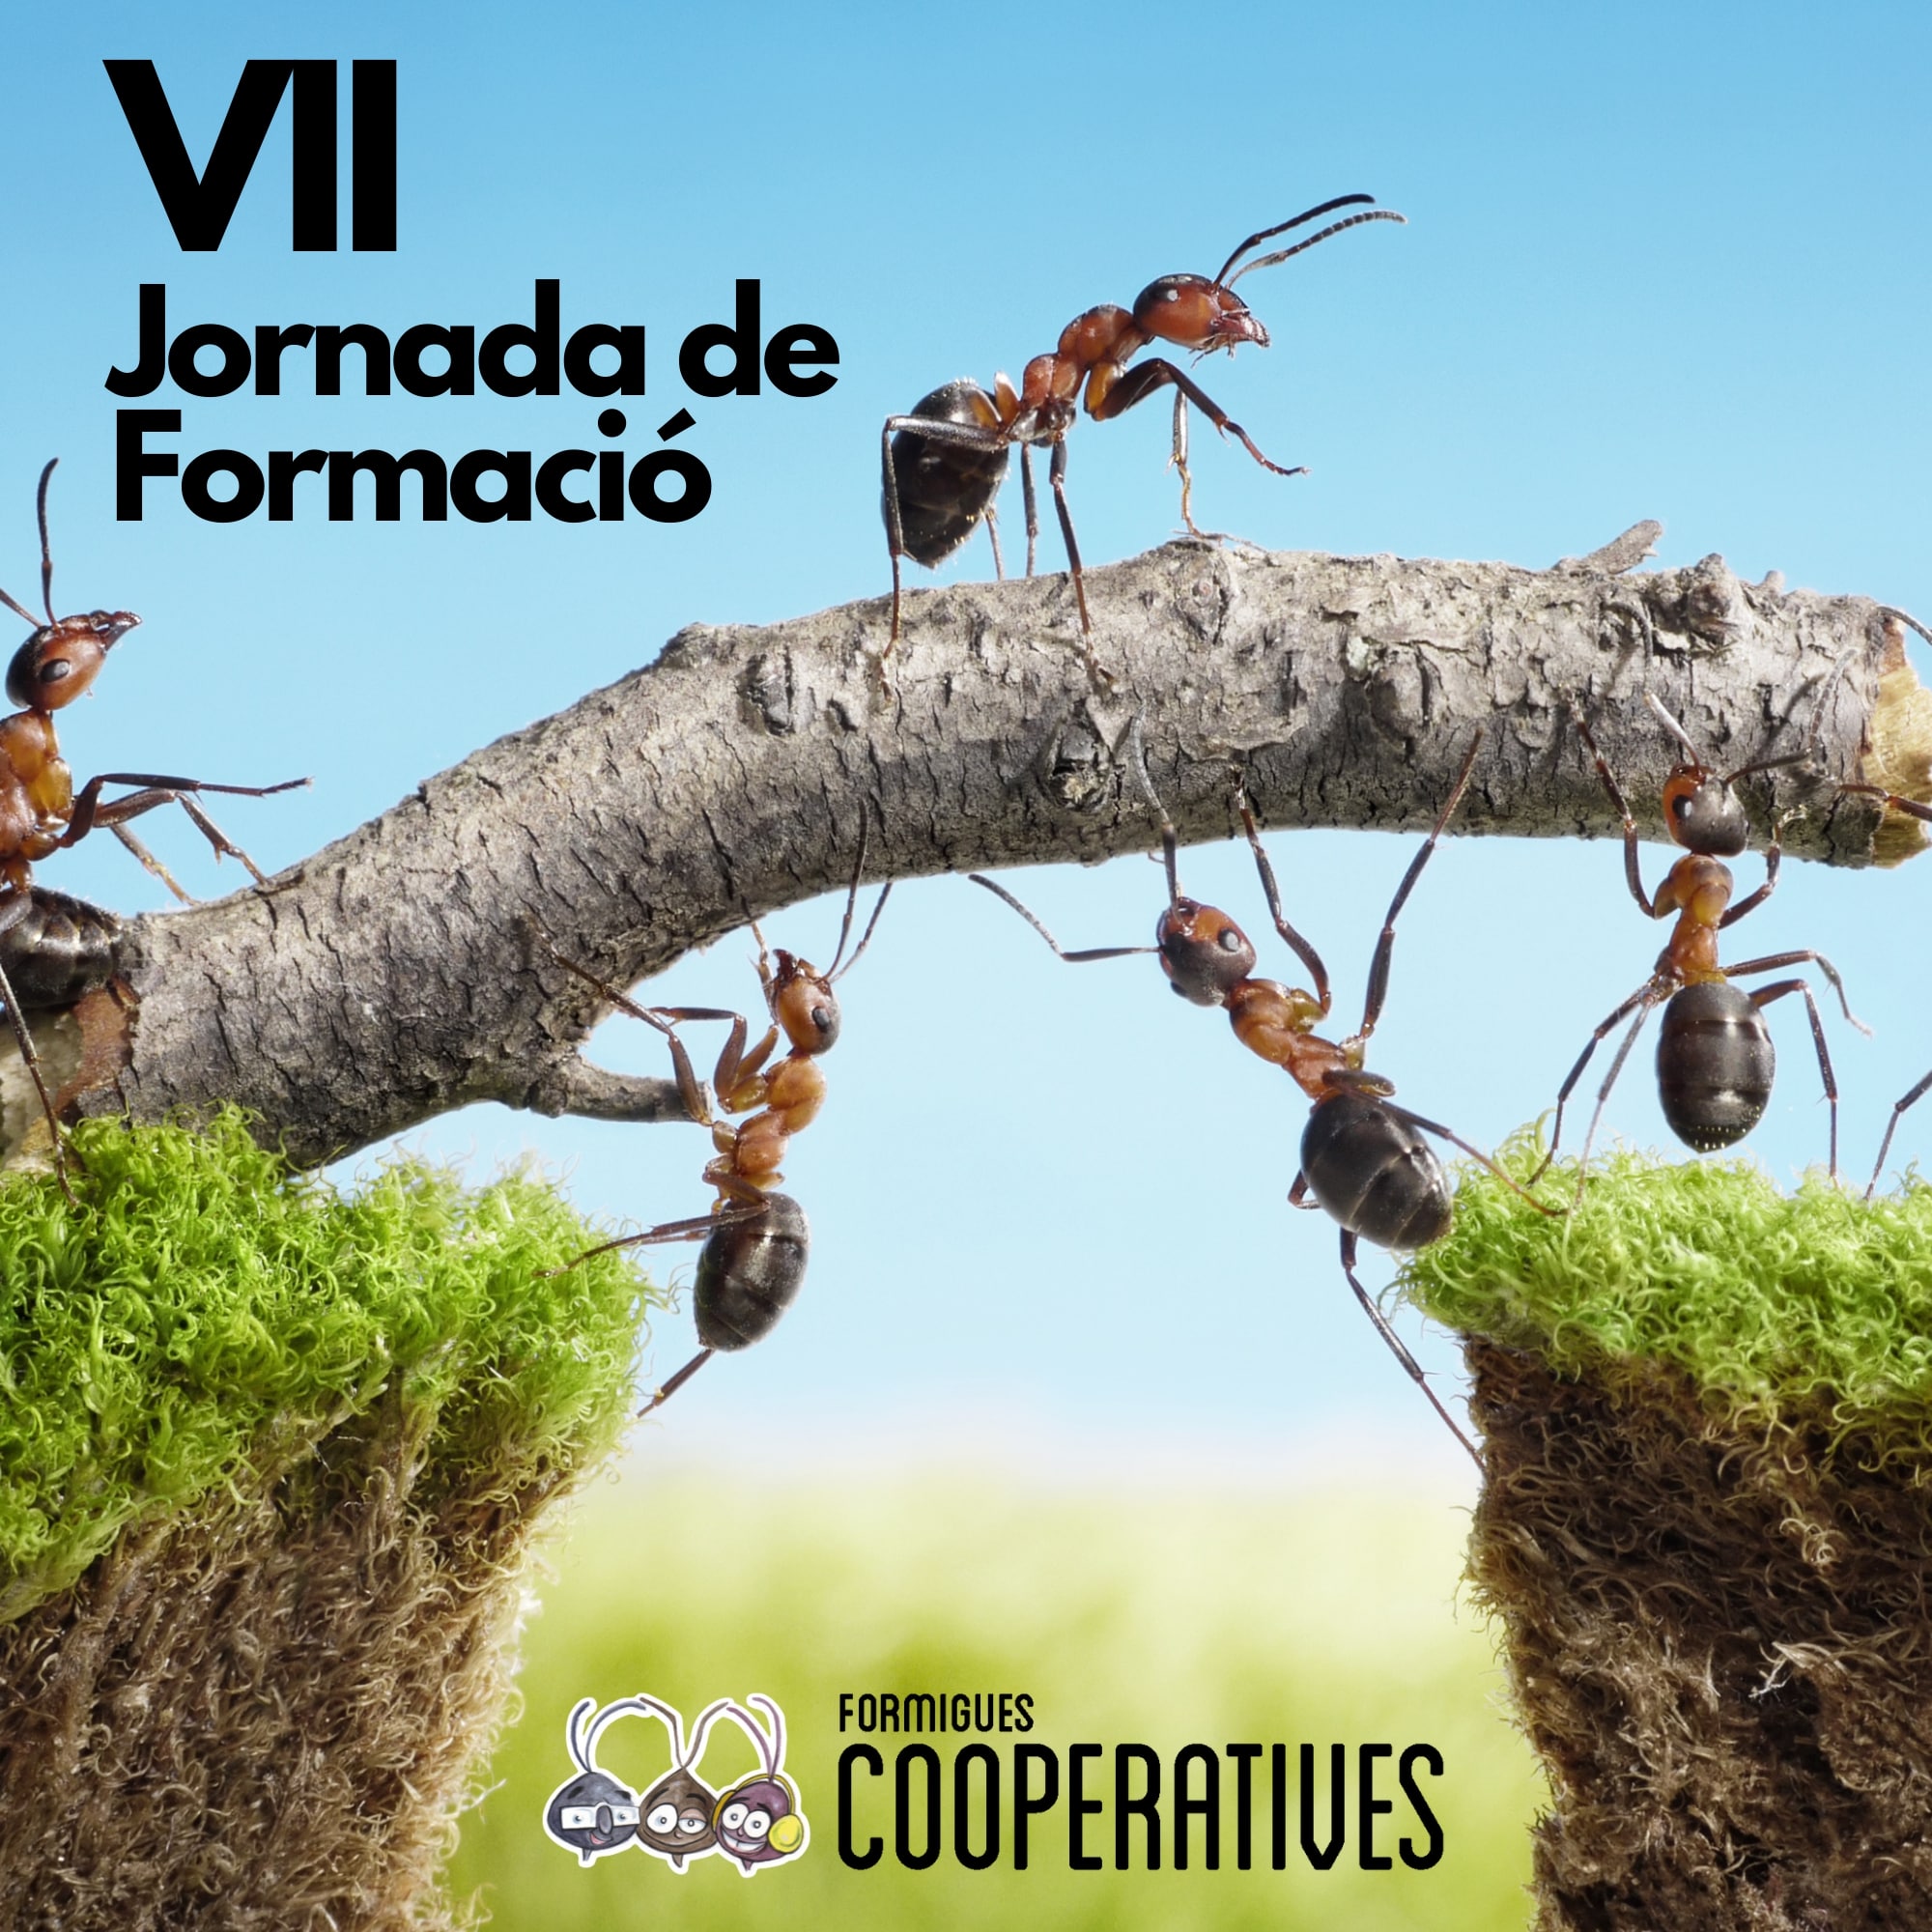 VII JORNADES DE FORMACIÓ. Formigues cooperatives